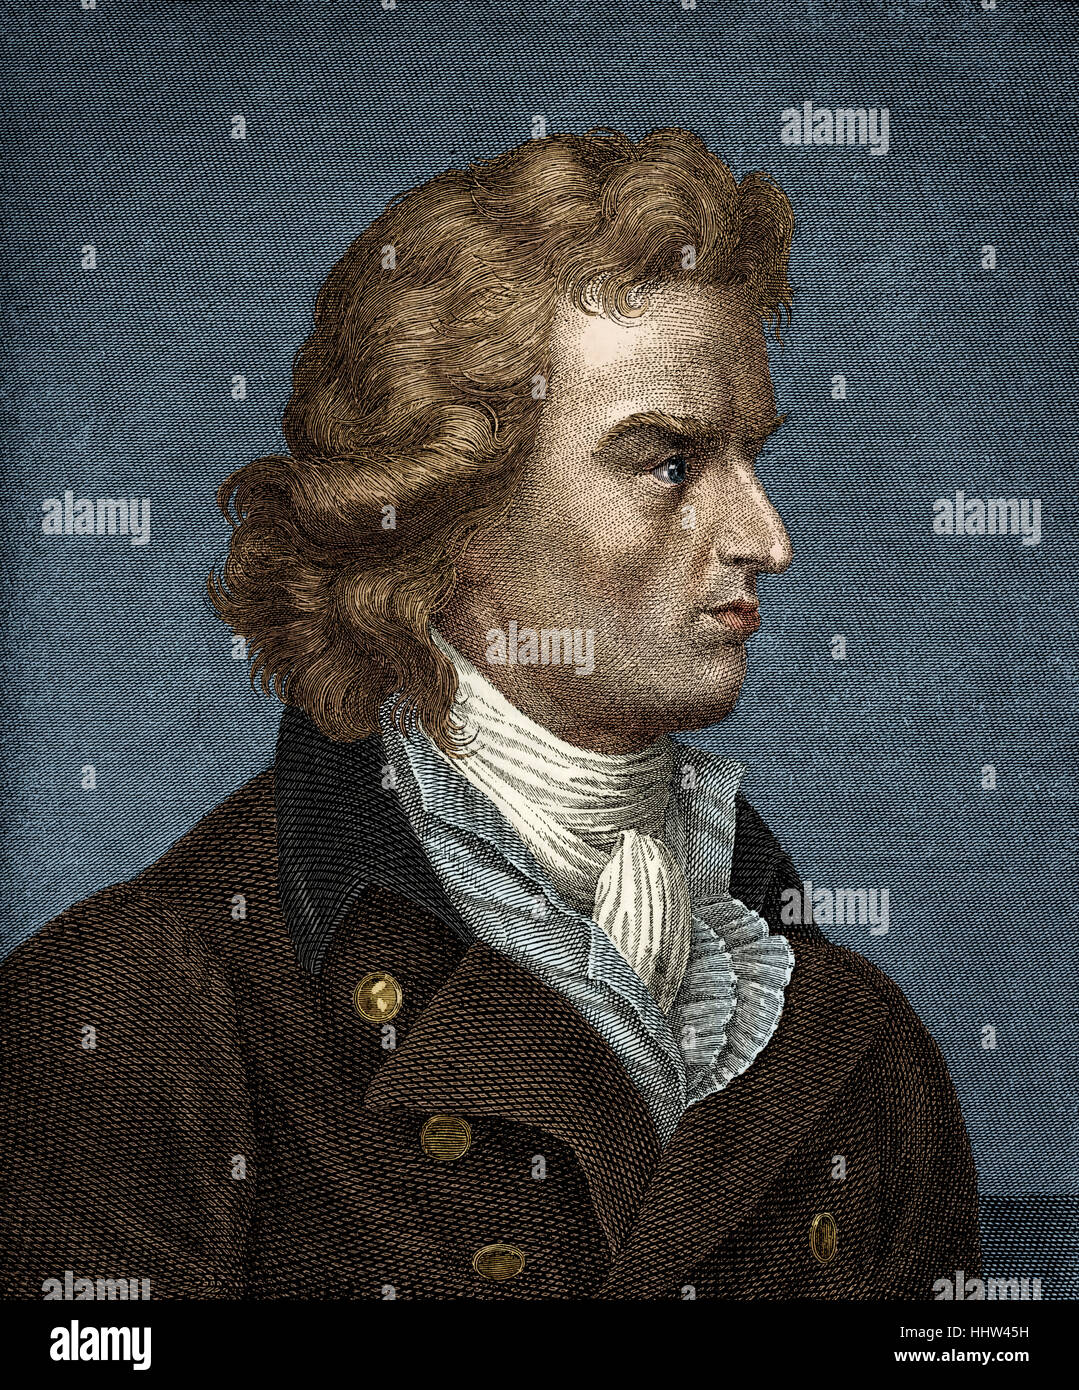 Friedrich von Schiller - Porträt. Deutscher Dichter und Dramatiker 10. November 1759 - 9. Mai 1805.  Schrieb "Ode an die Freude" (Beethovens Stockfoto